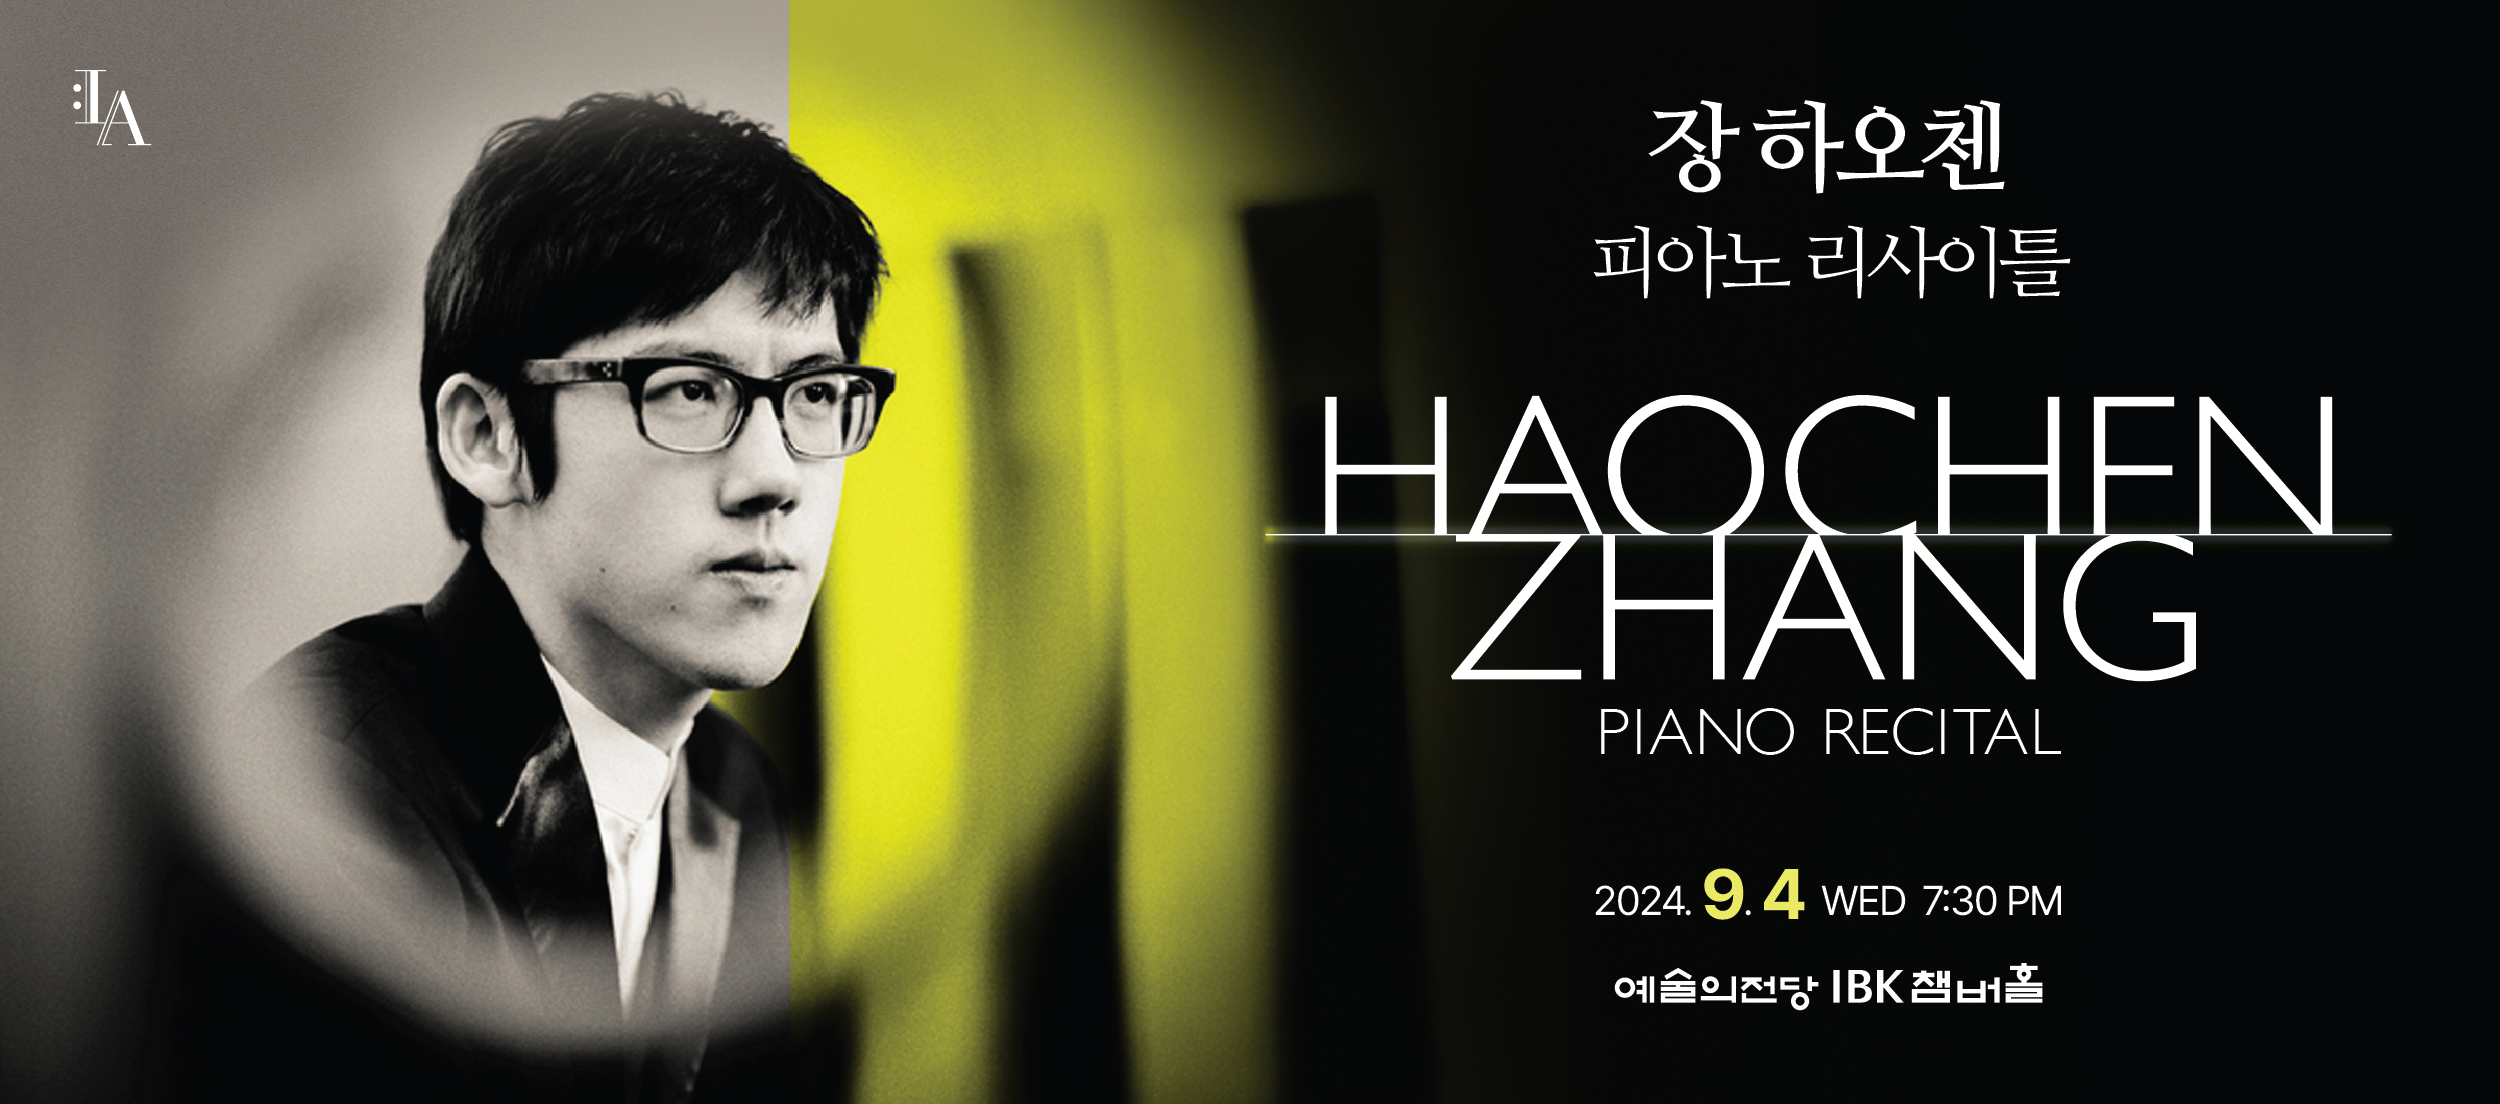 Zhang Haochen Piano Recital